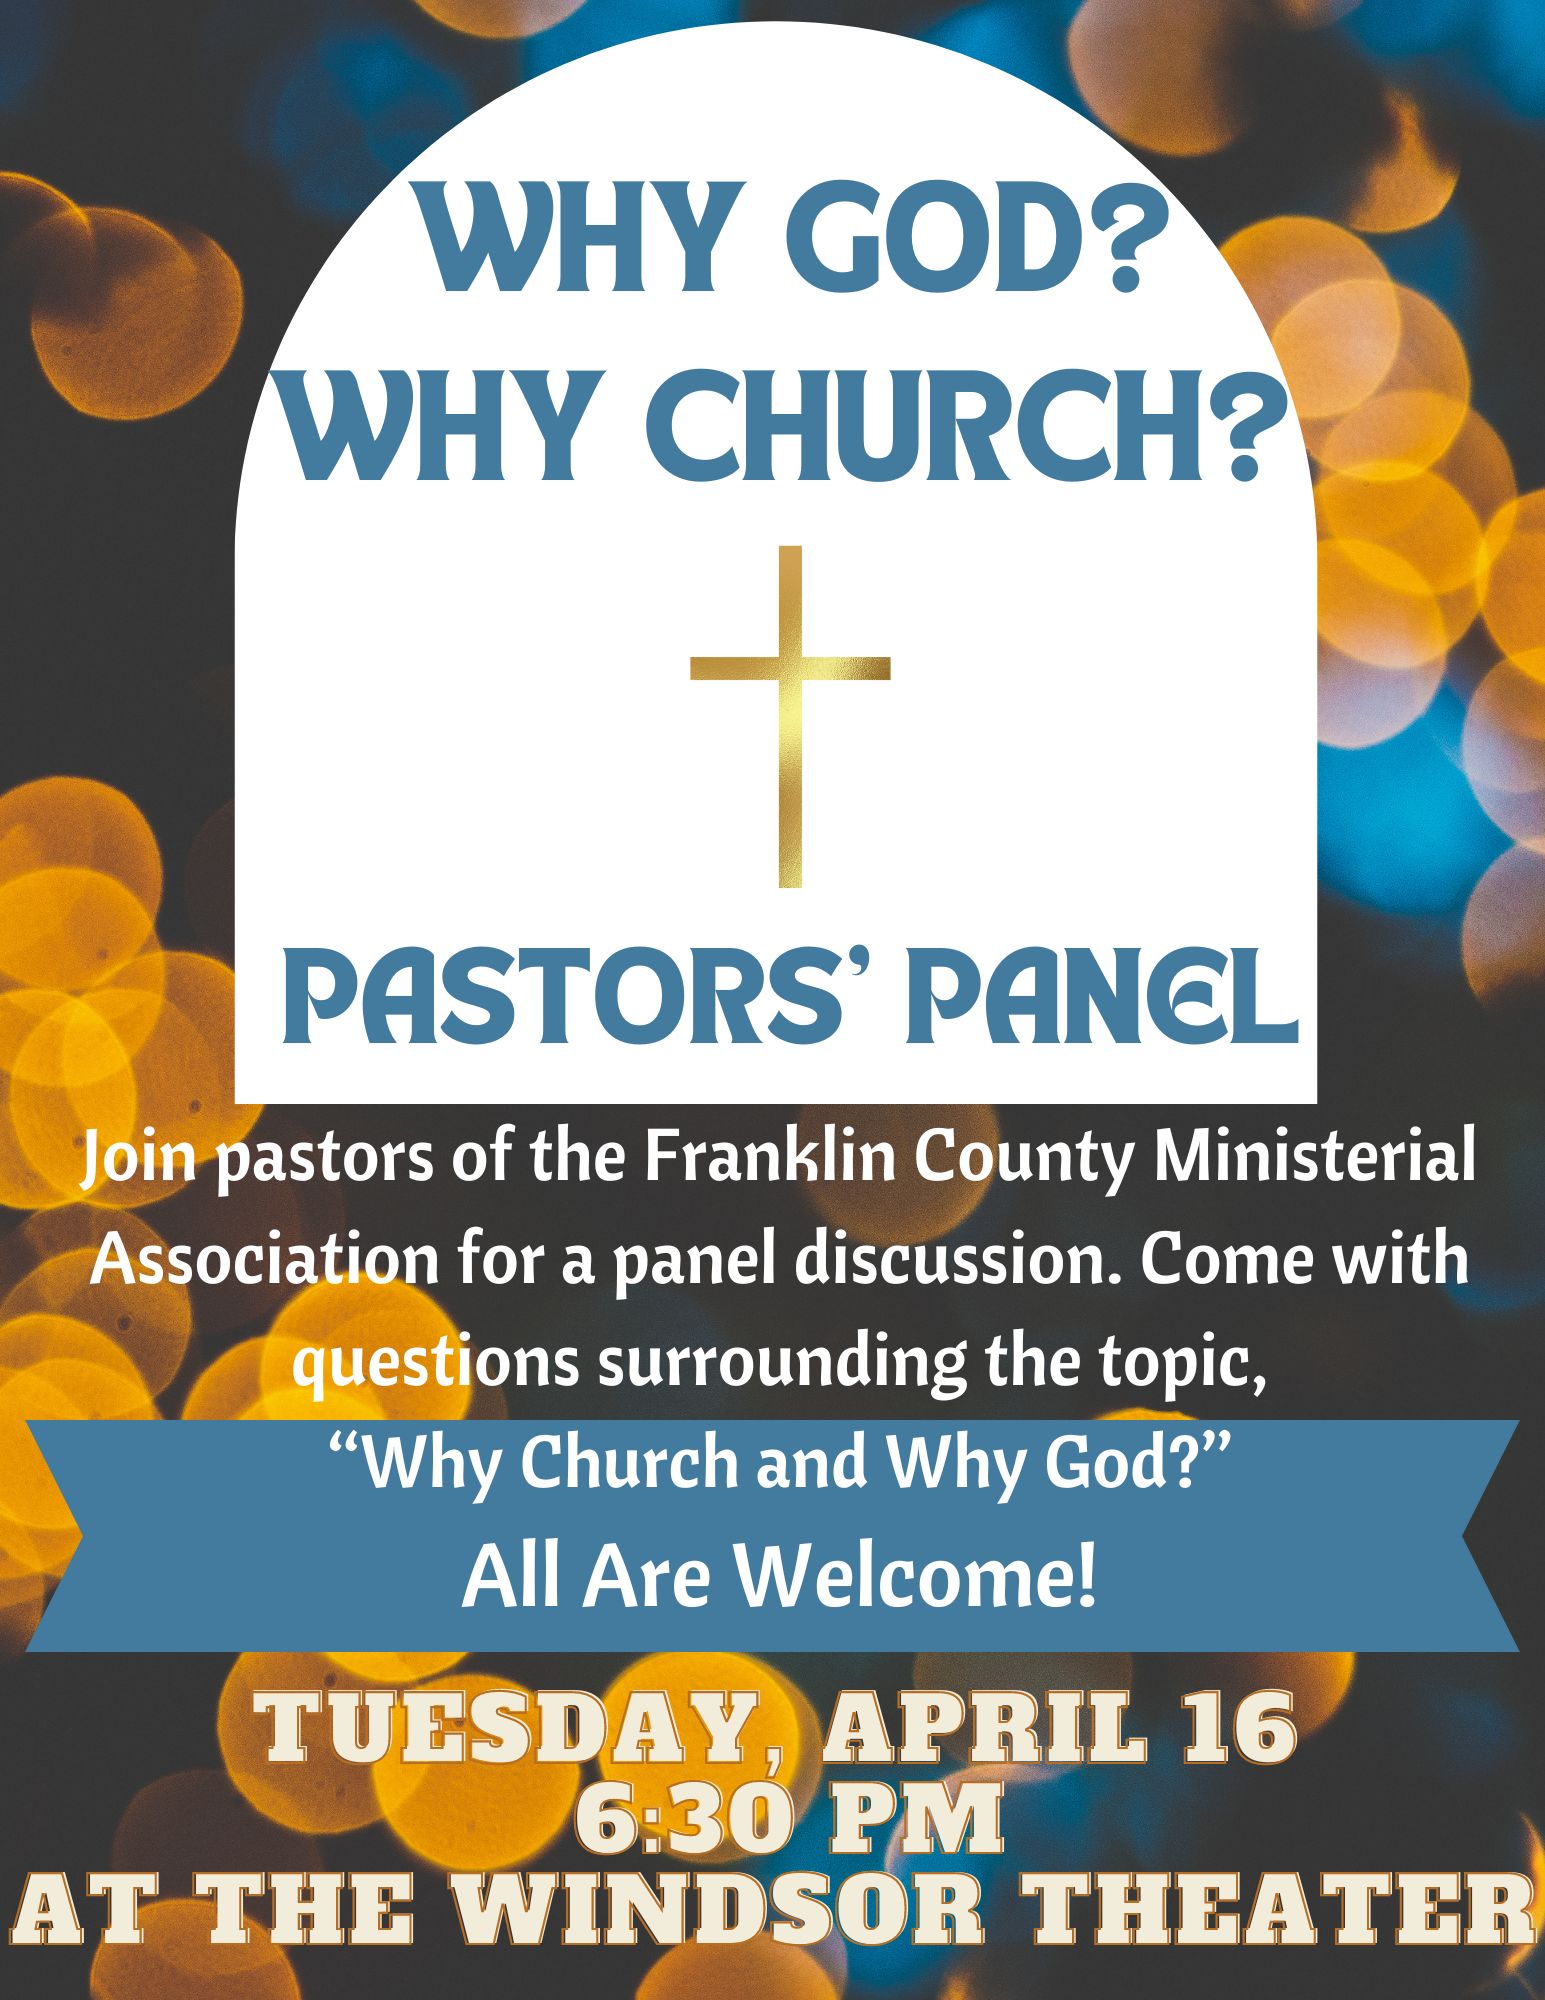 Pastors' Panel Tuesday, April 16